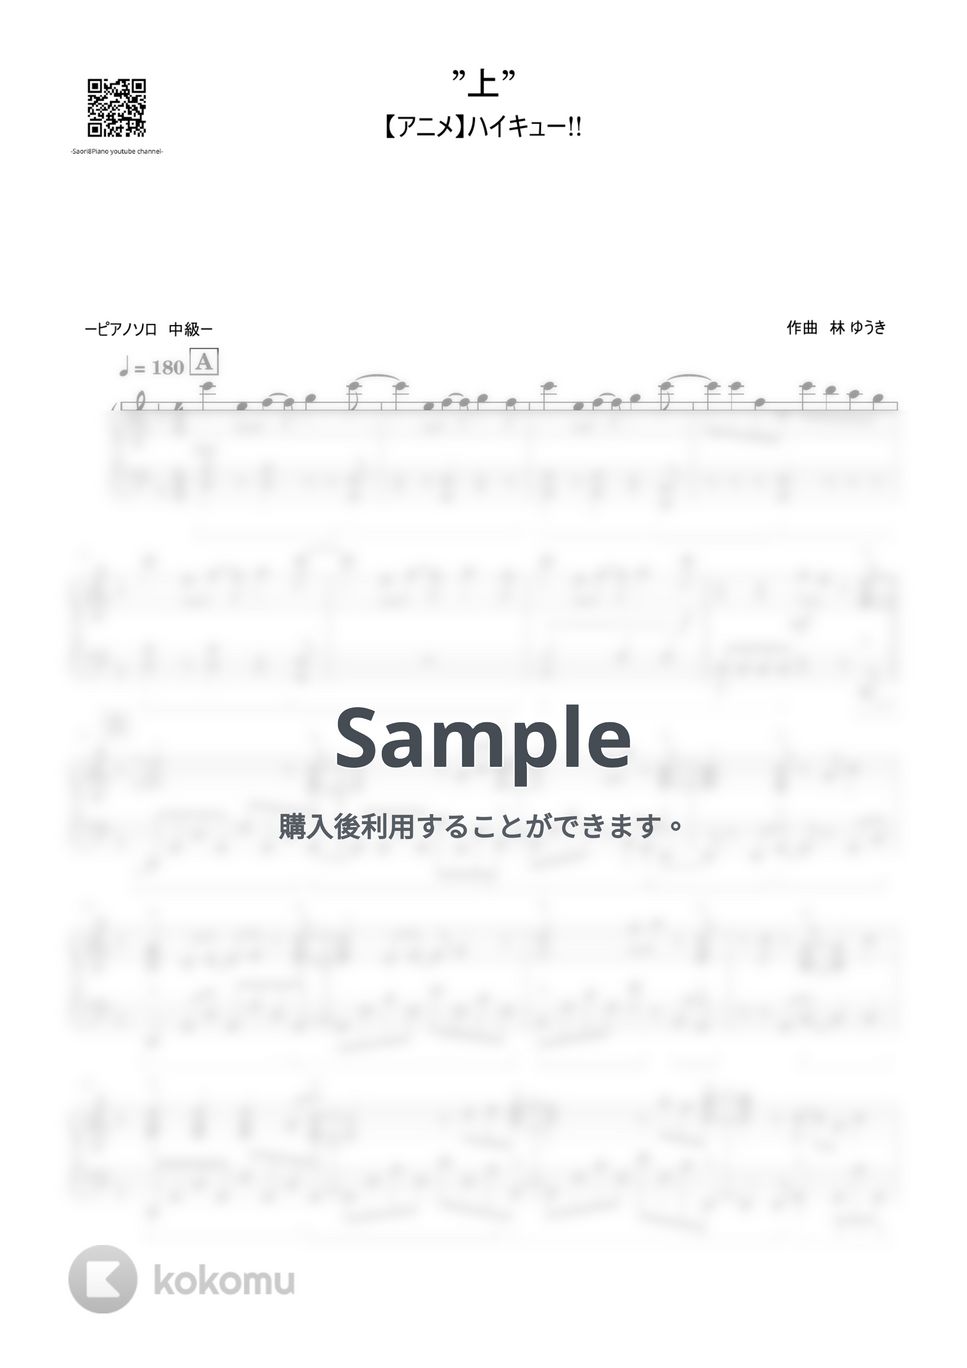 林ゆうき - ”上” (ハイキューOST 中級レベル) by Saori8Piano